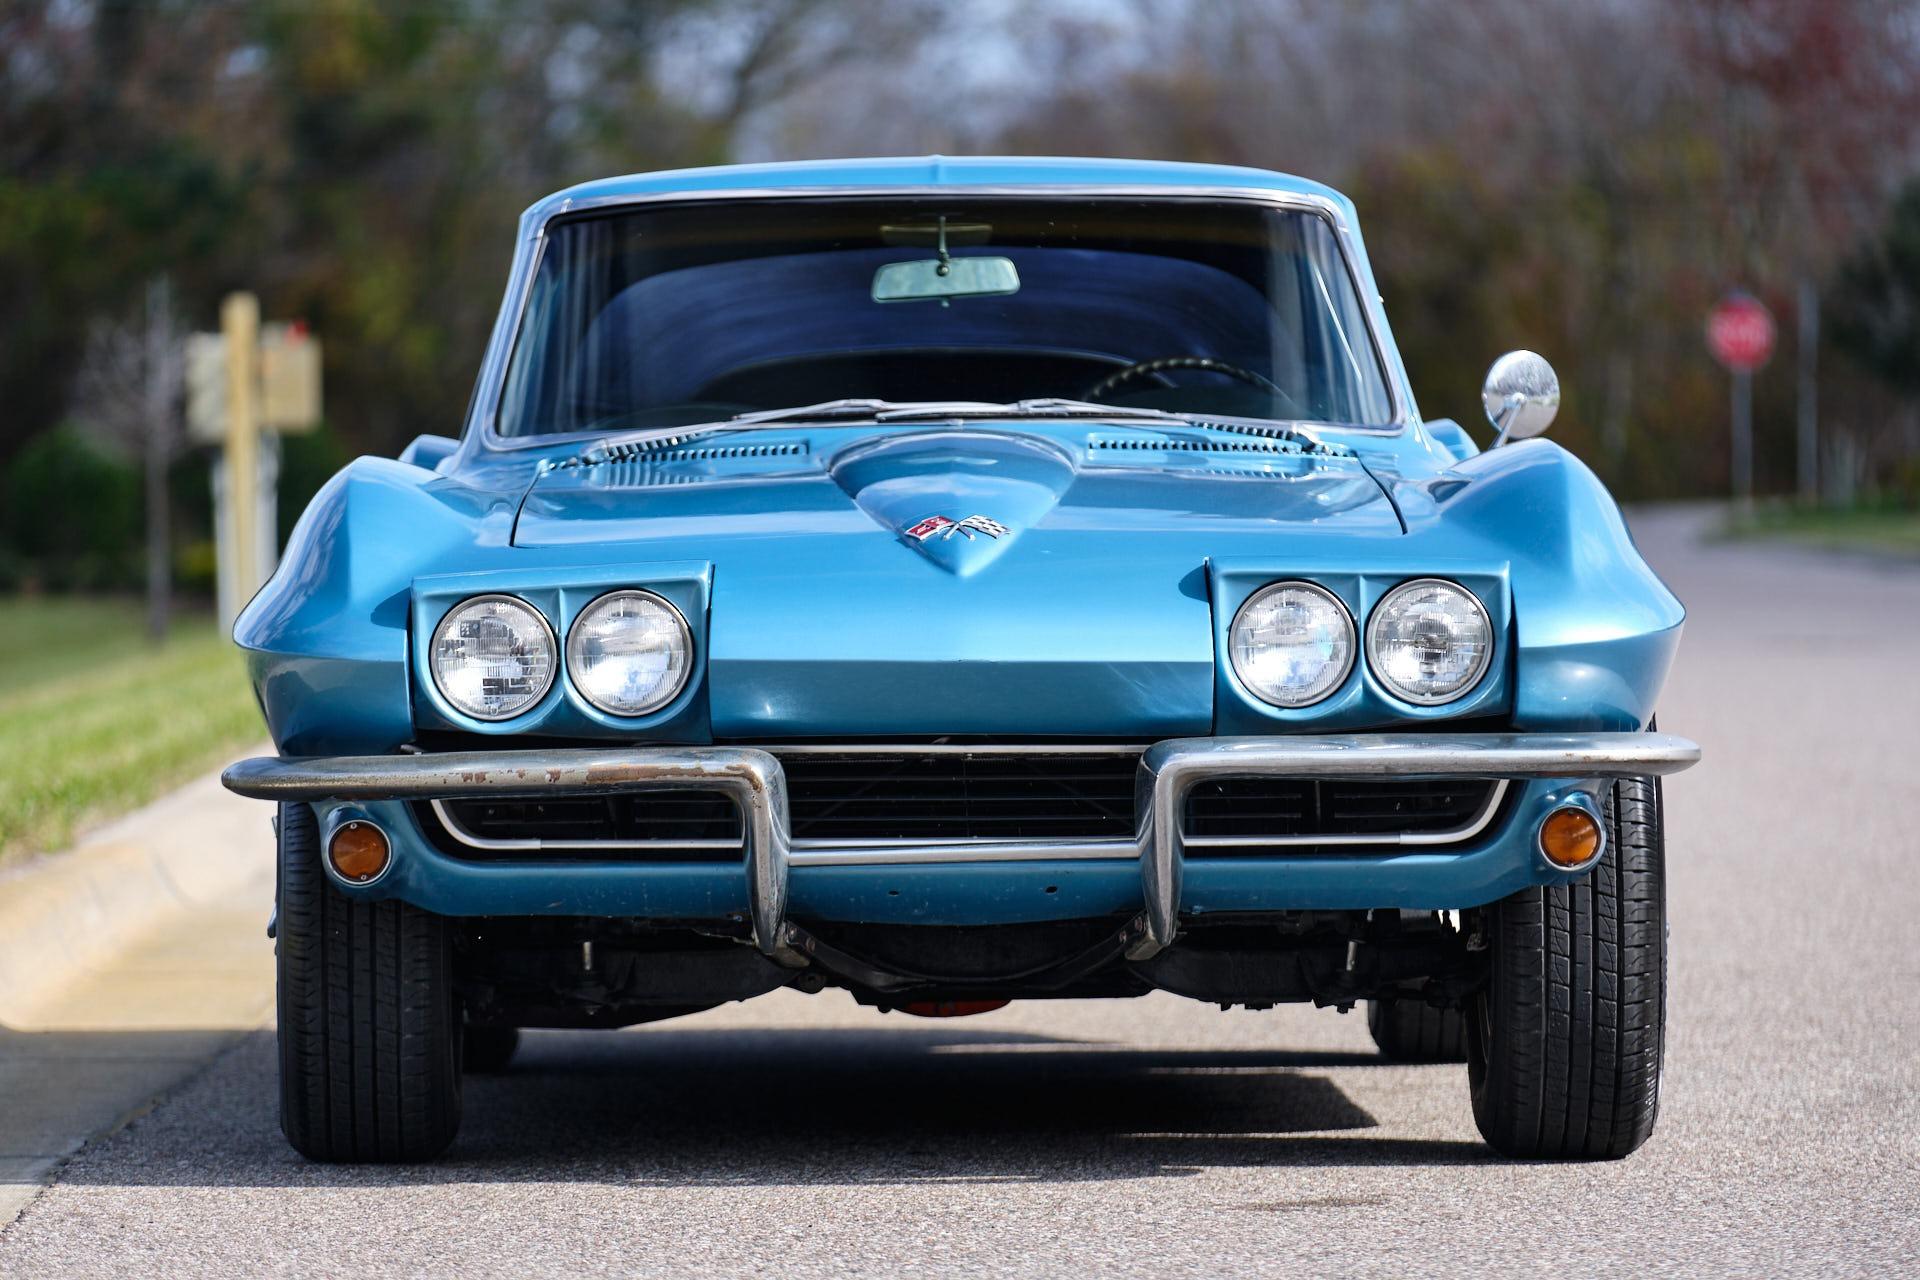 1965 Chevrolet Corvette 2 Door - $83,965